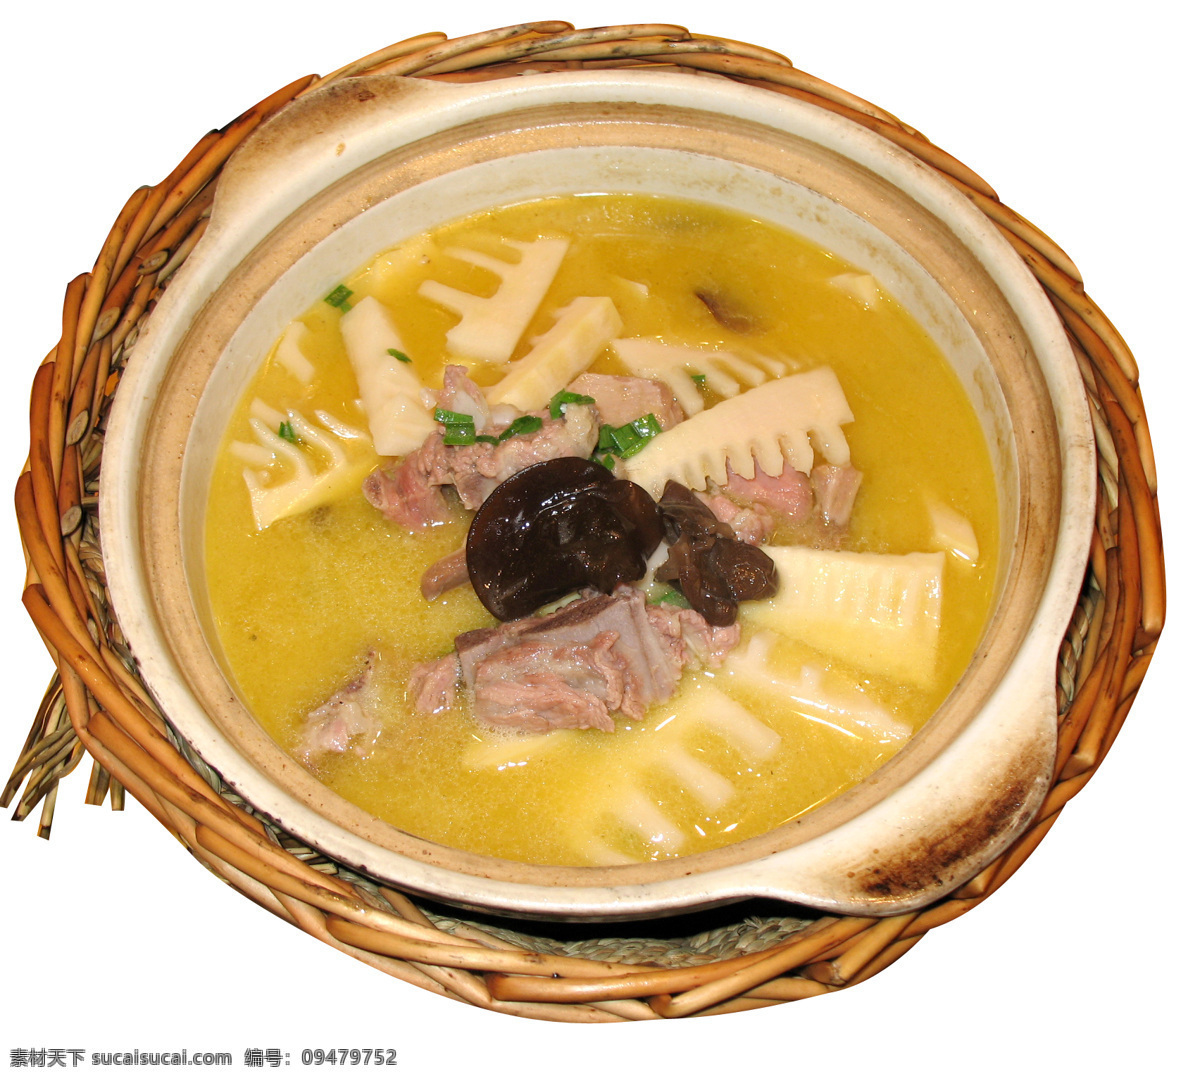 腌笃鲜 咸排 笋 汤 砂锅 美食 餐饮美食 传统美食 摄影图库